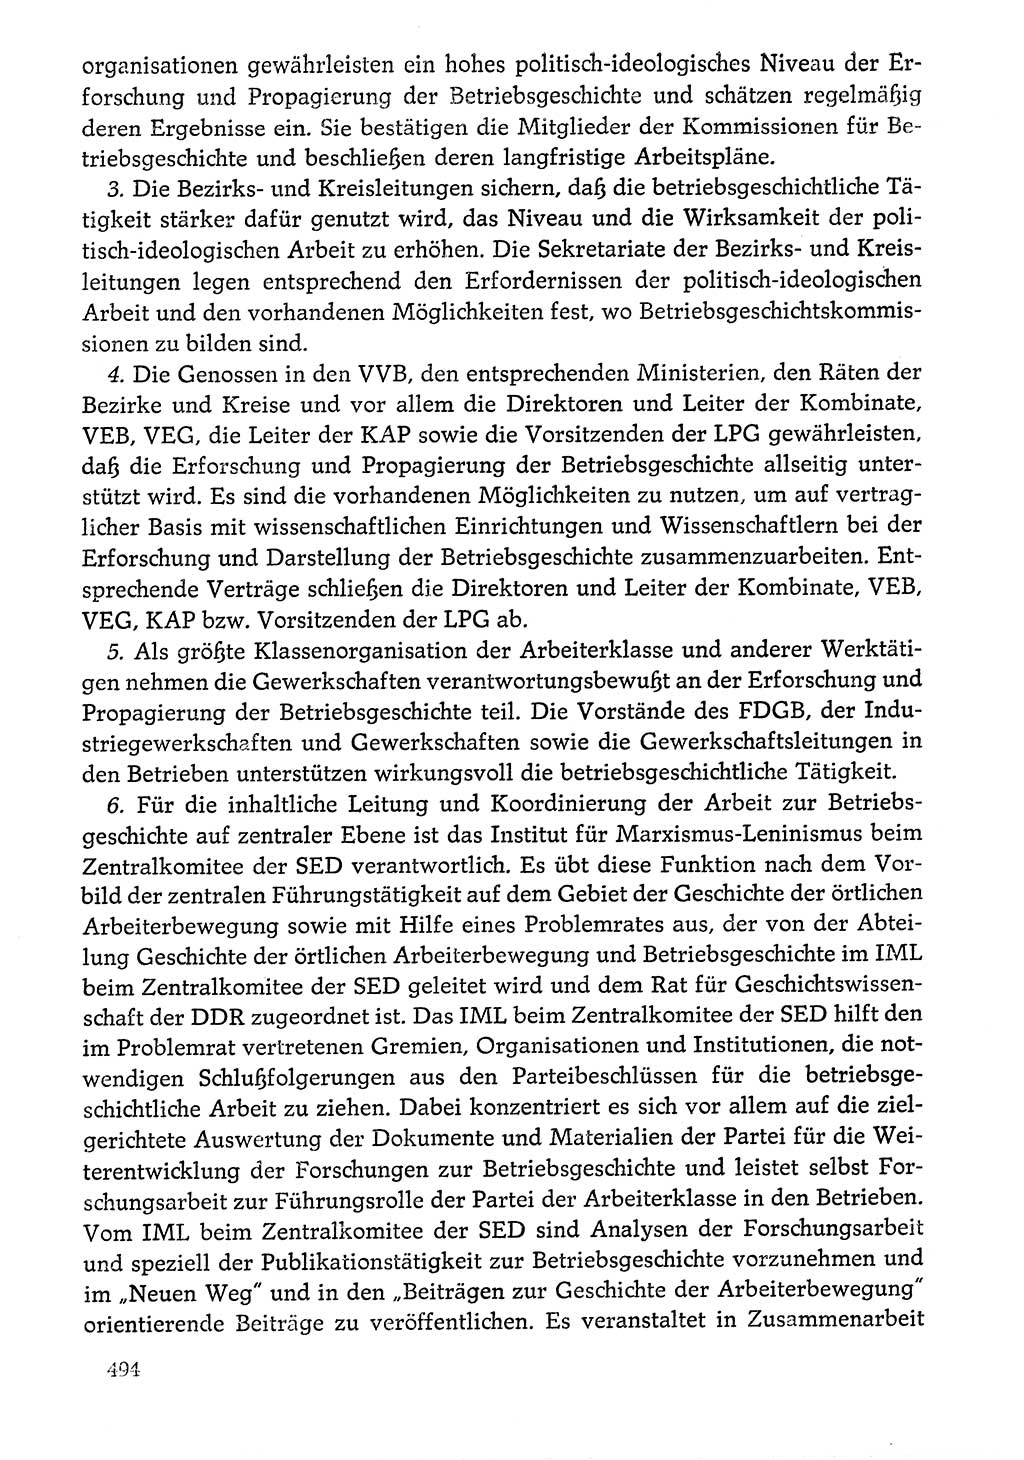 Dokumente der Sozialistischen Einheitspartei Deutschlands (SED) [Deutsche Demokratische Republik (DDR)] 1976-1977, Seite 494 (Dok. SED DDR 1976-1977, S. 494)